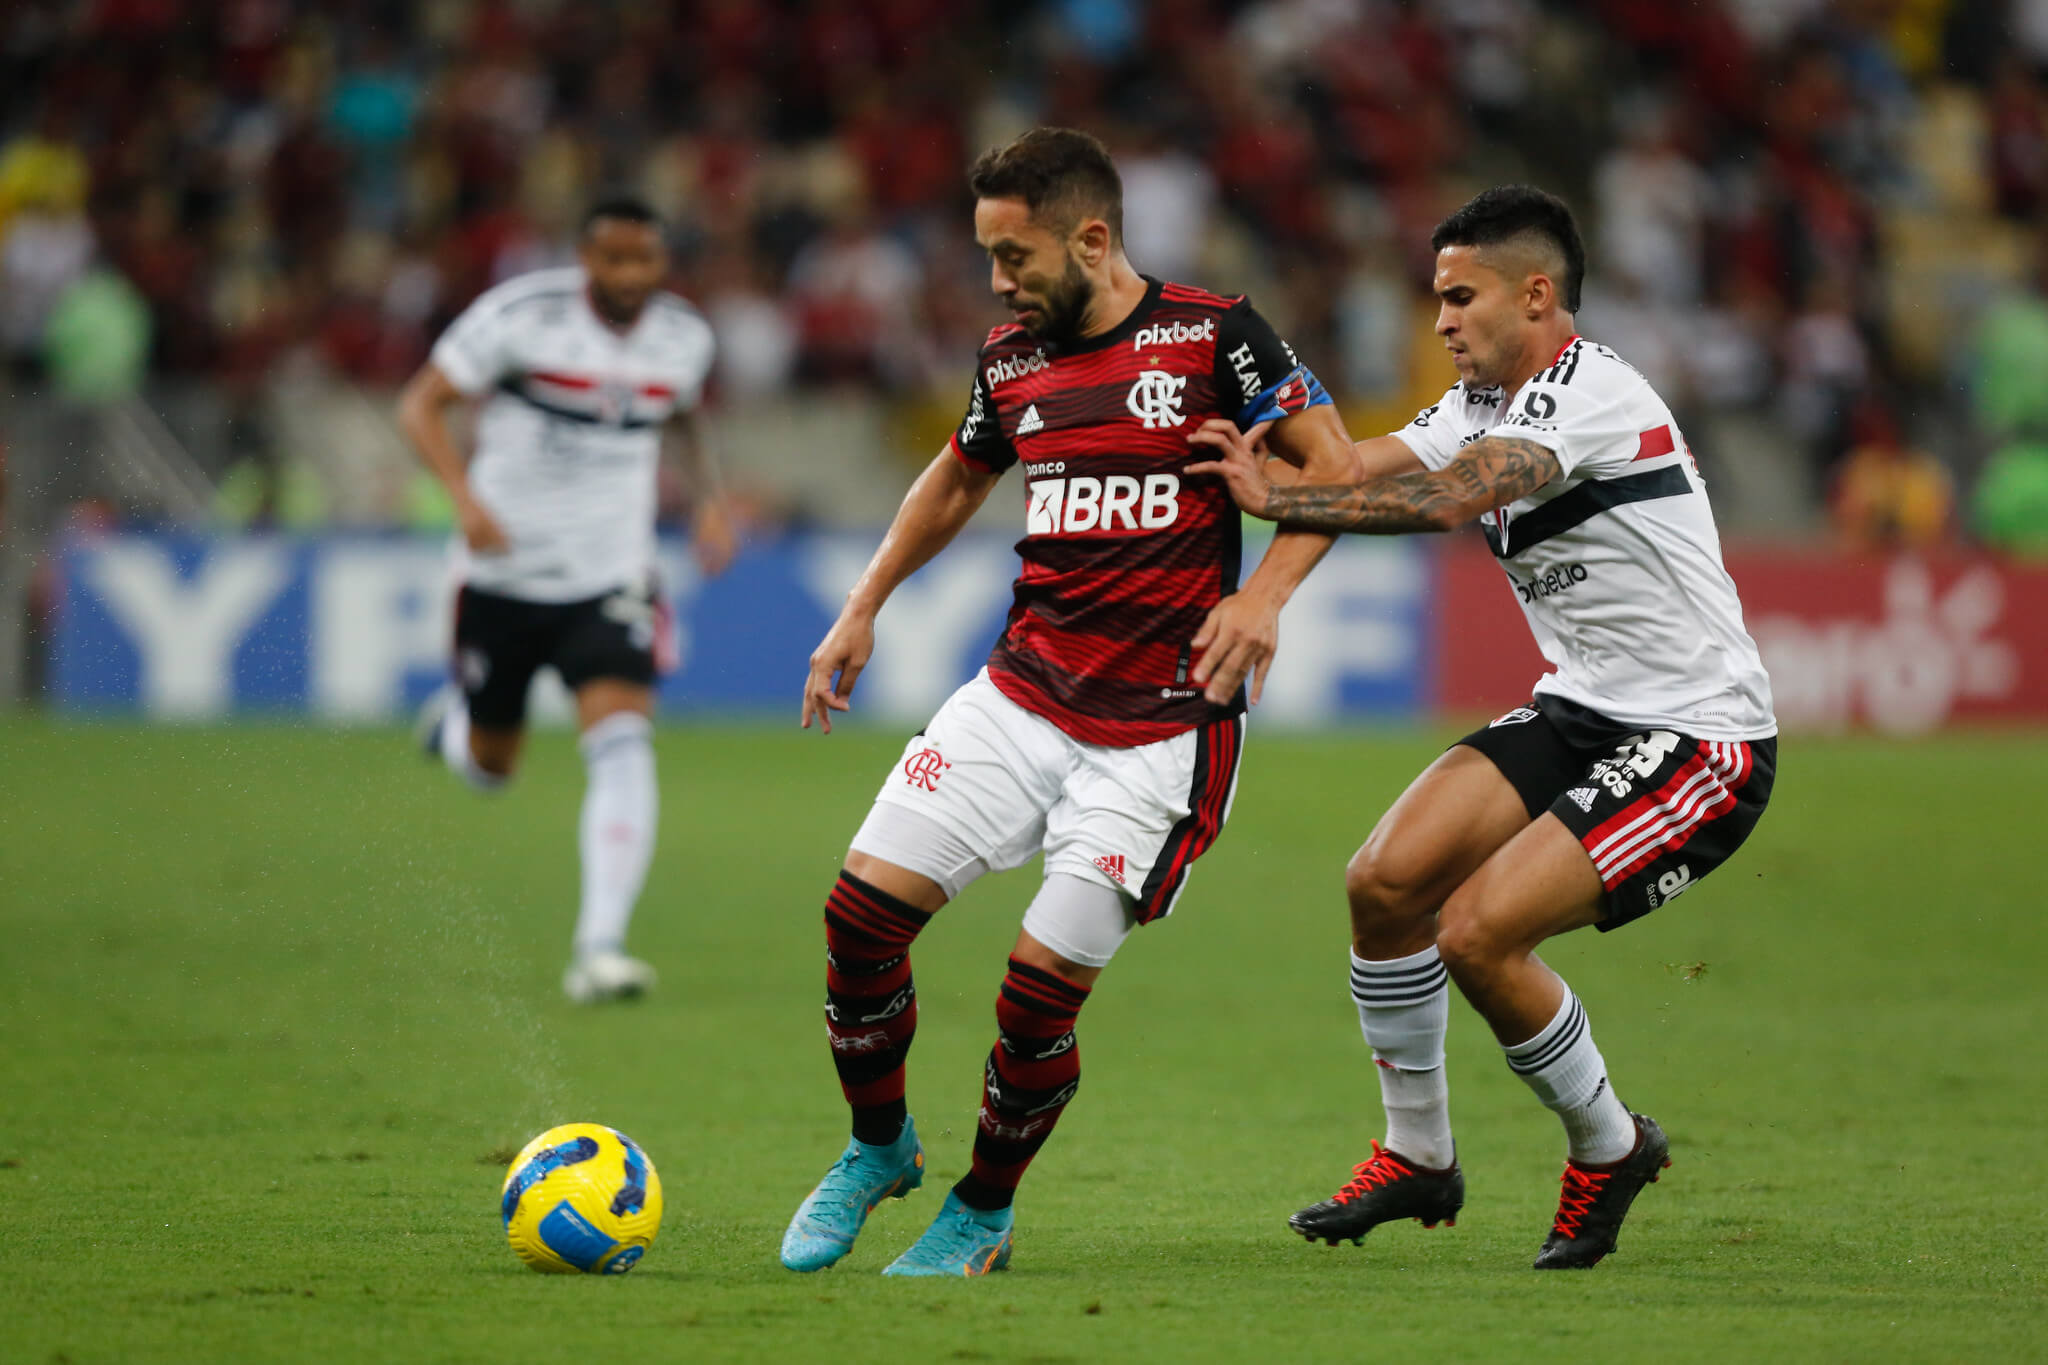 Foto: Divulgação / Flamengo - 14.09.2022